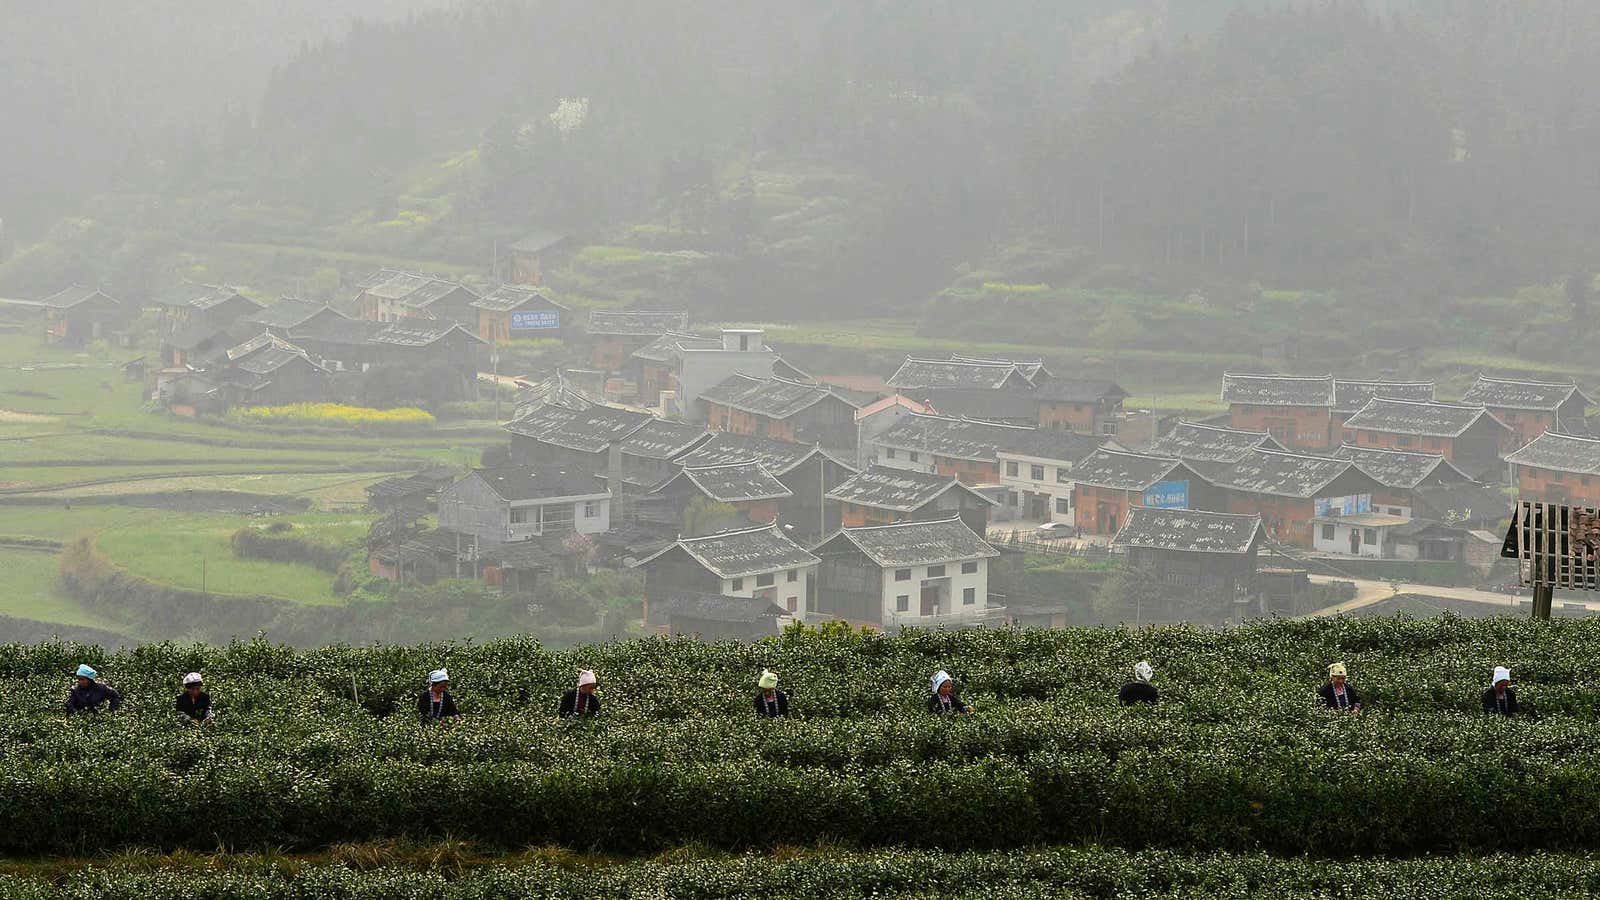 Guizhou province, southwest China.